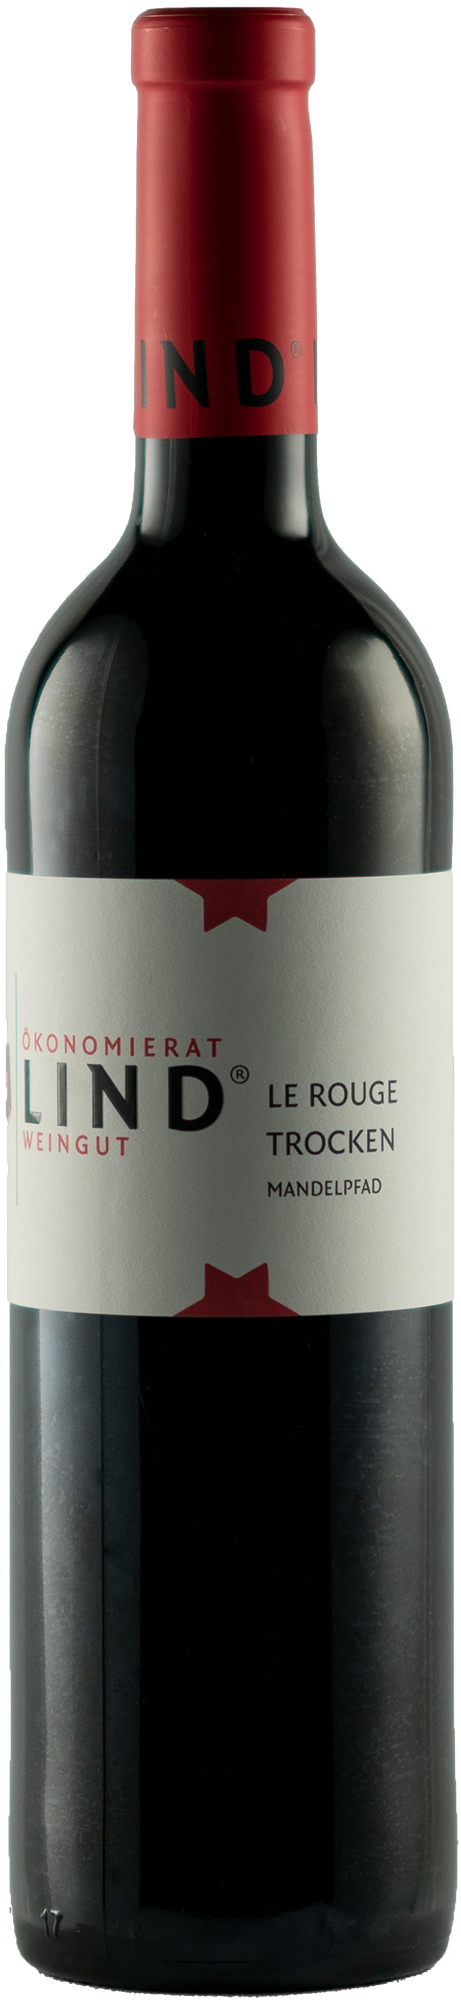 2019 Le Rouge trocken Mandelpfad 0,75 L - Weingut Ökonomierat Lind